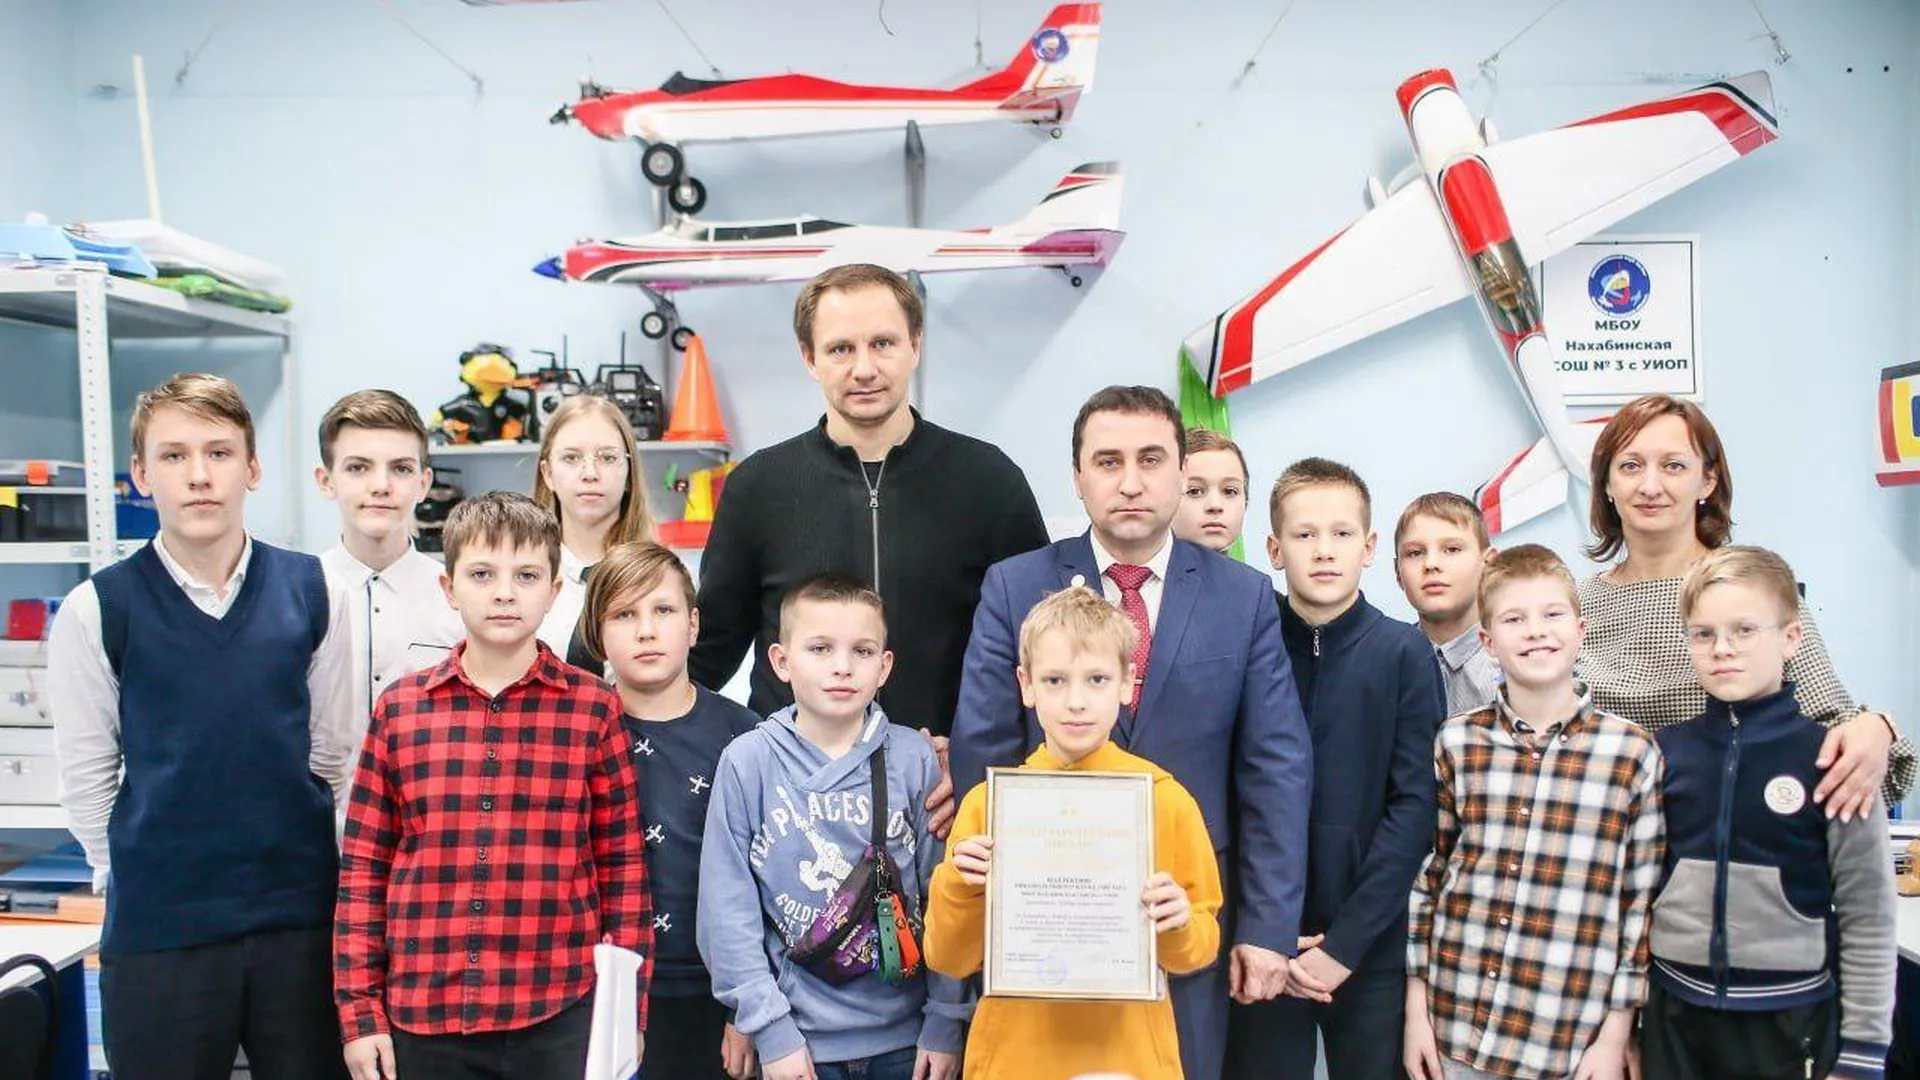 Глава округа Красногорск Волков посетил авиамодельный клуб «Зиг-заг»